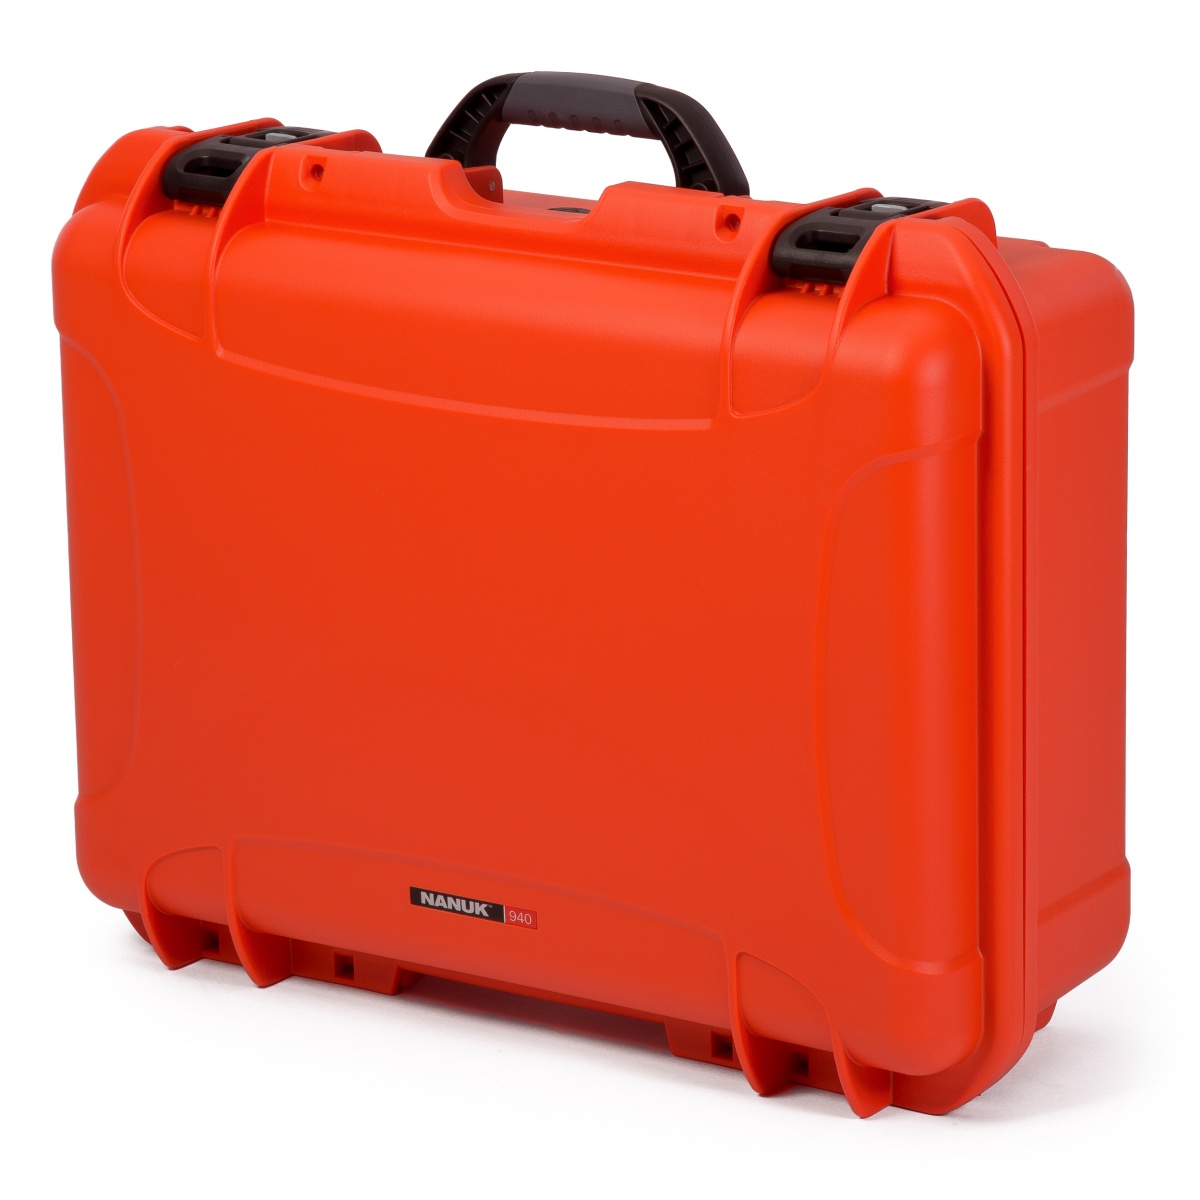 Nanuk Koffer 940 mit Trennwänden Orange